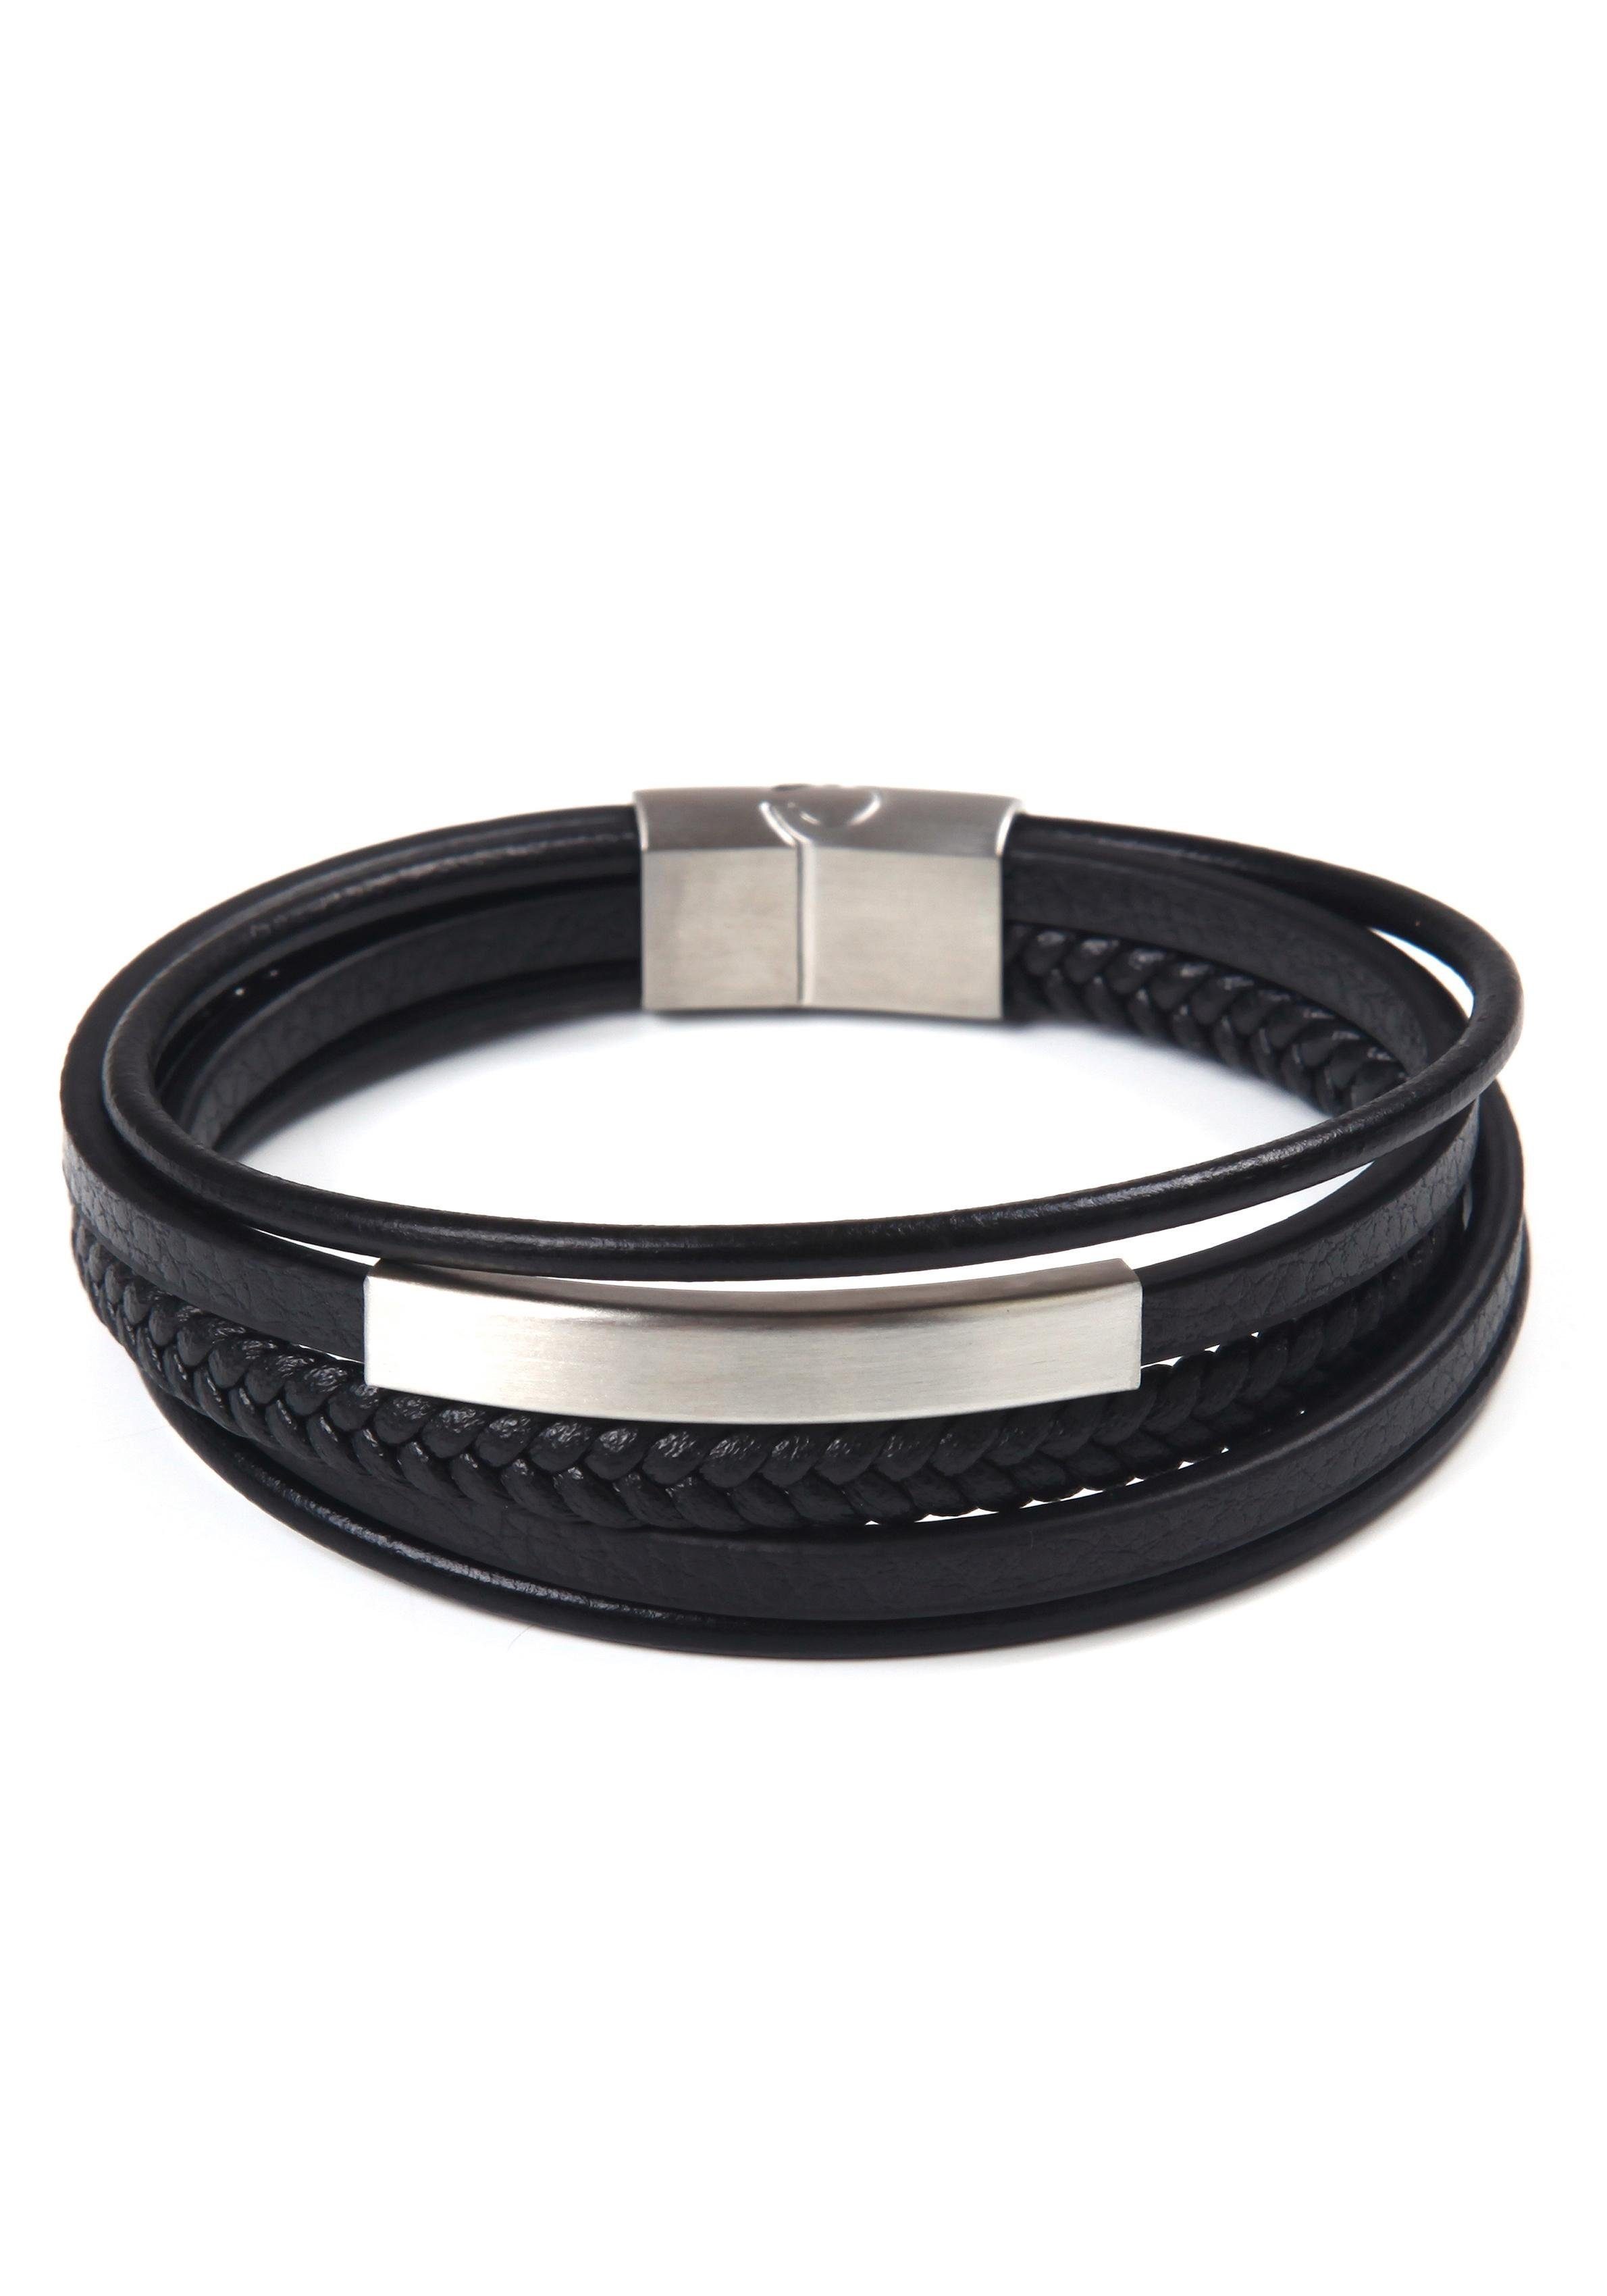 Firetti Armband stylisches Stil, Design im edelstahlfarben-schwarz mehrreihig sportlich-eleganten